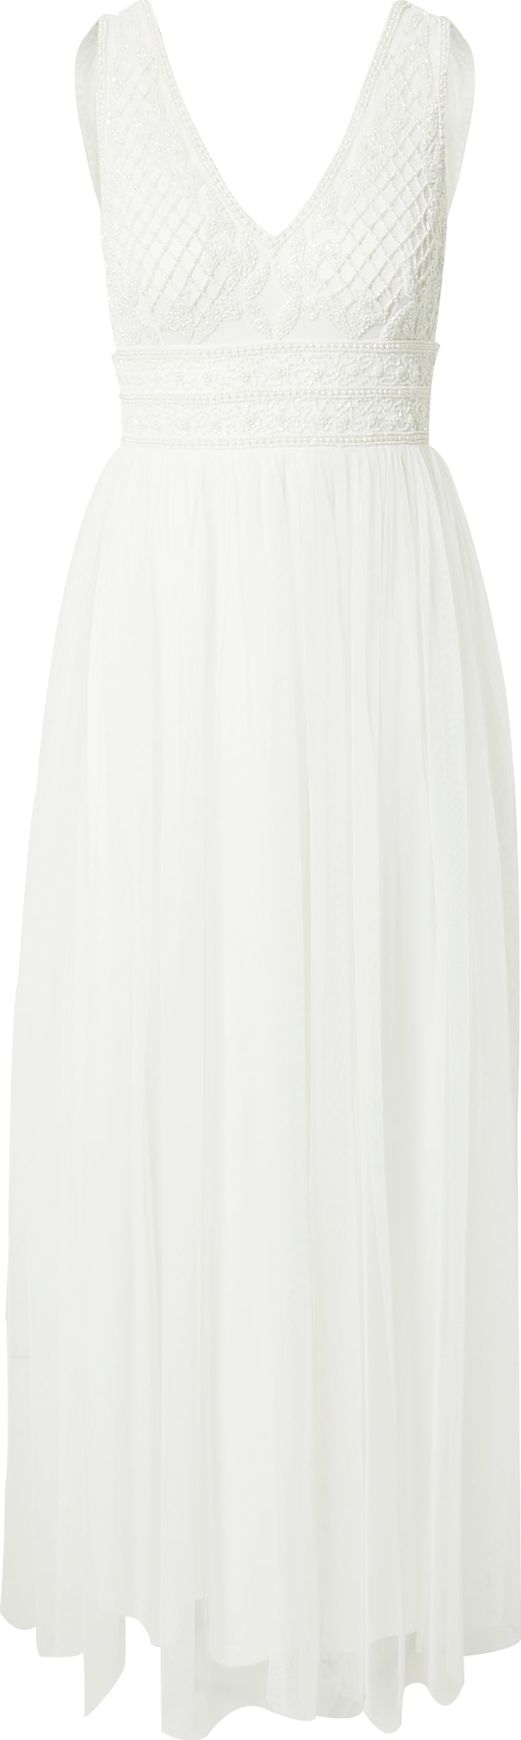 Společenské šaty 'Kreshma' Lace & Beads bílá